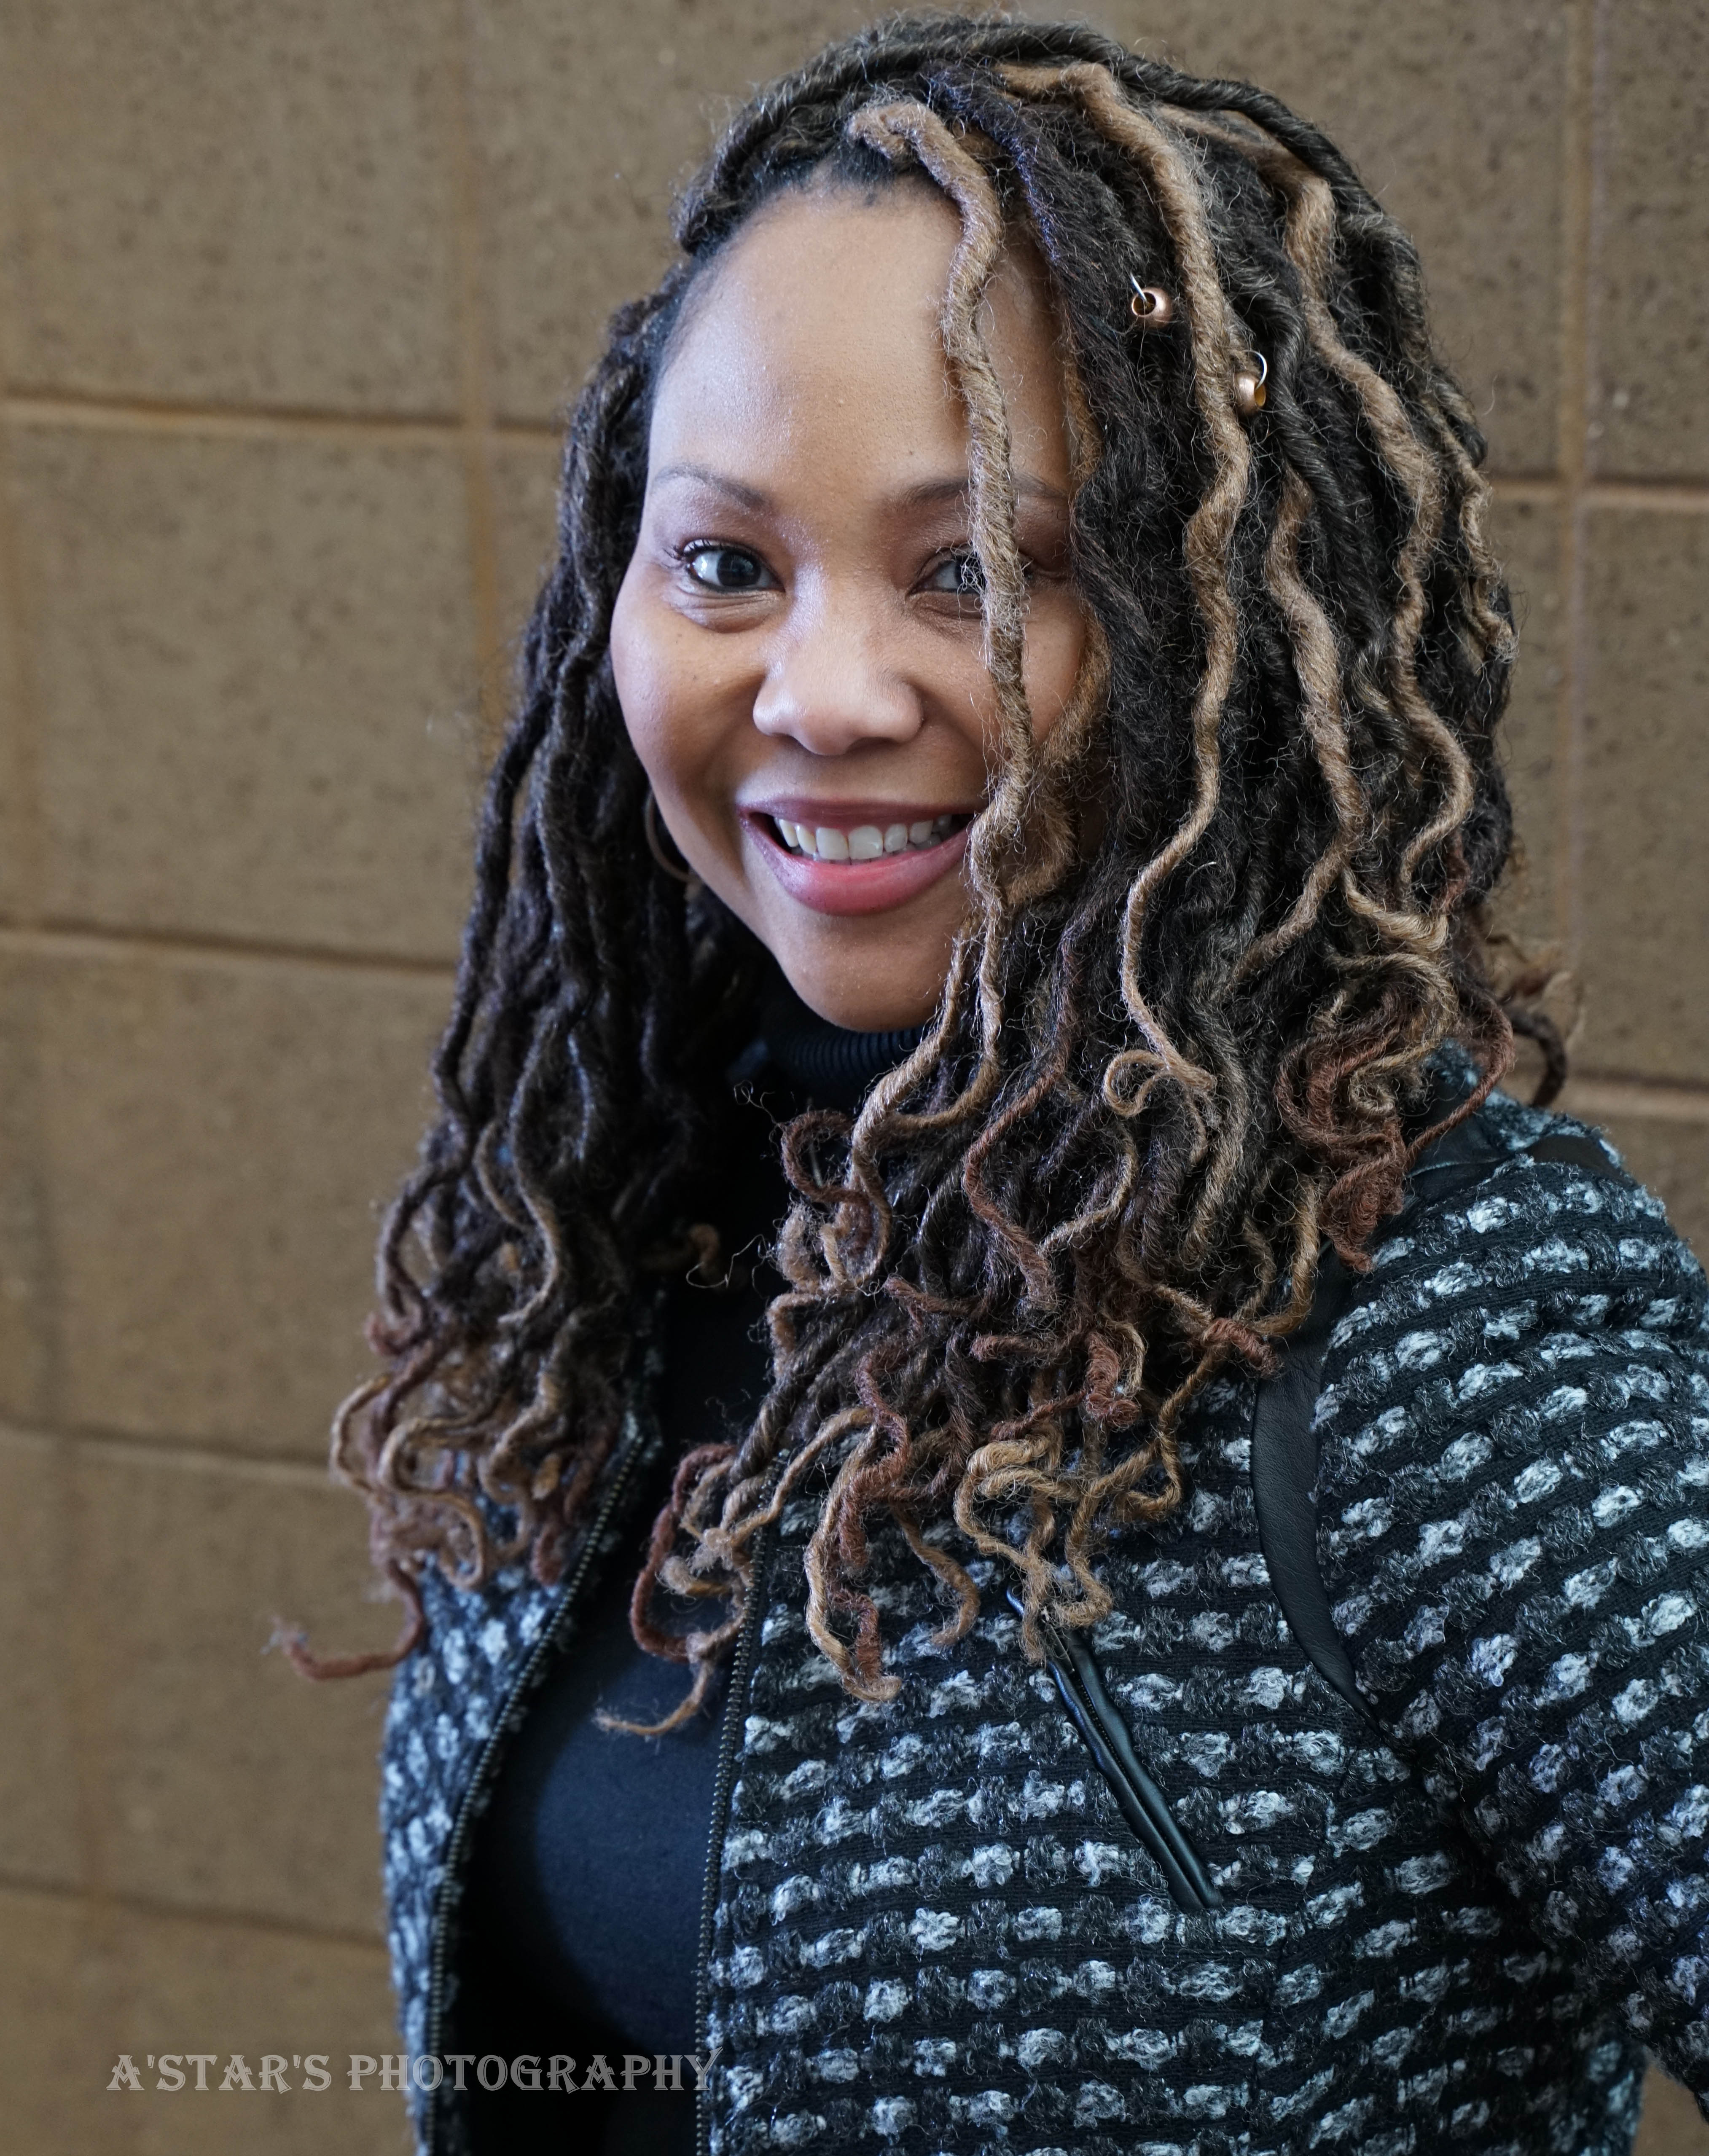 Author Kimberly Grayson